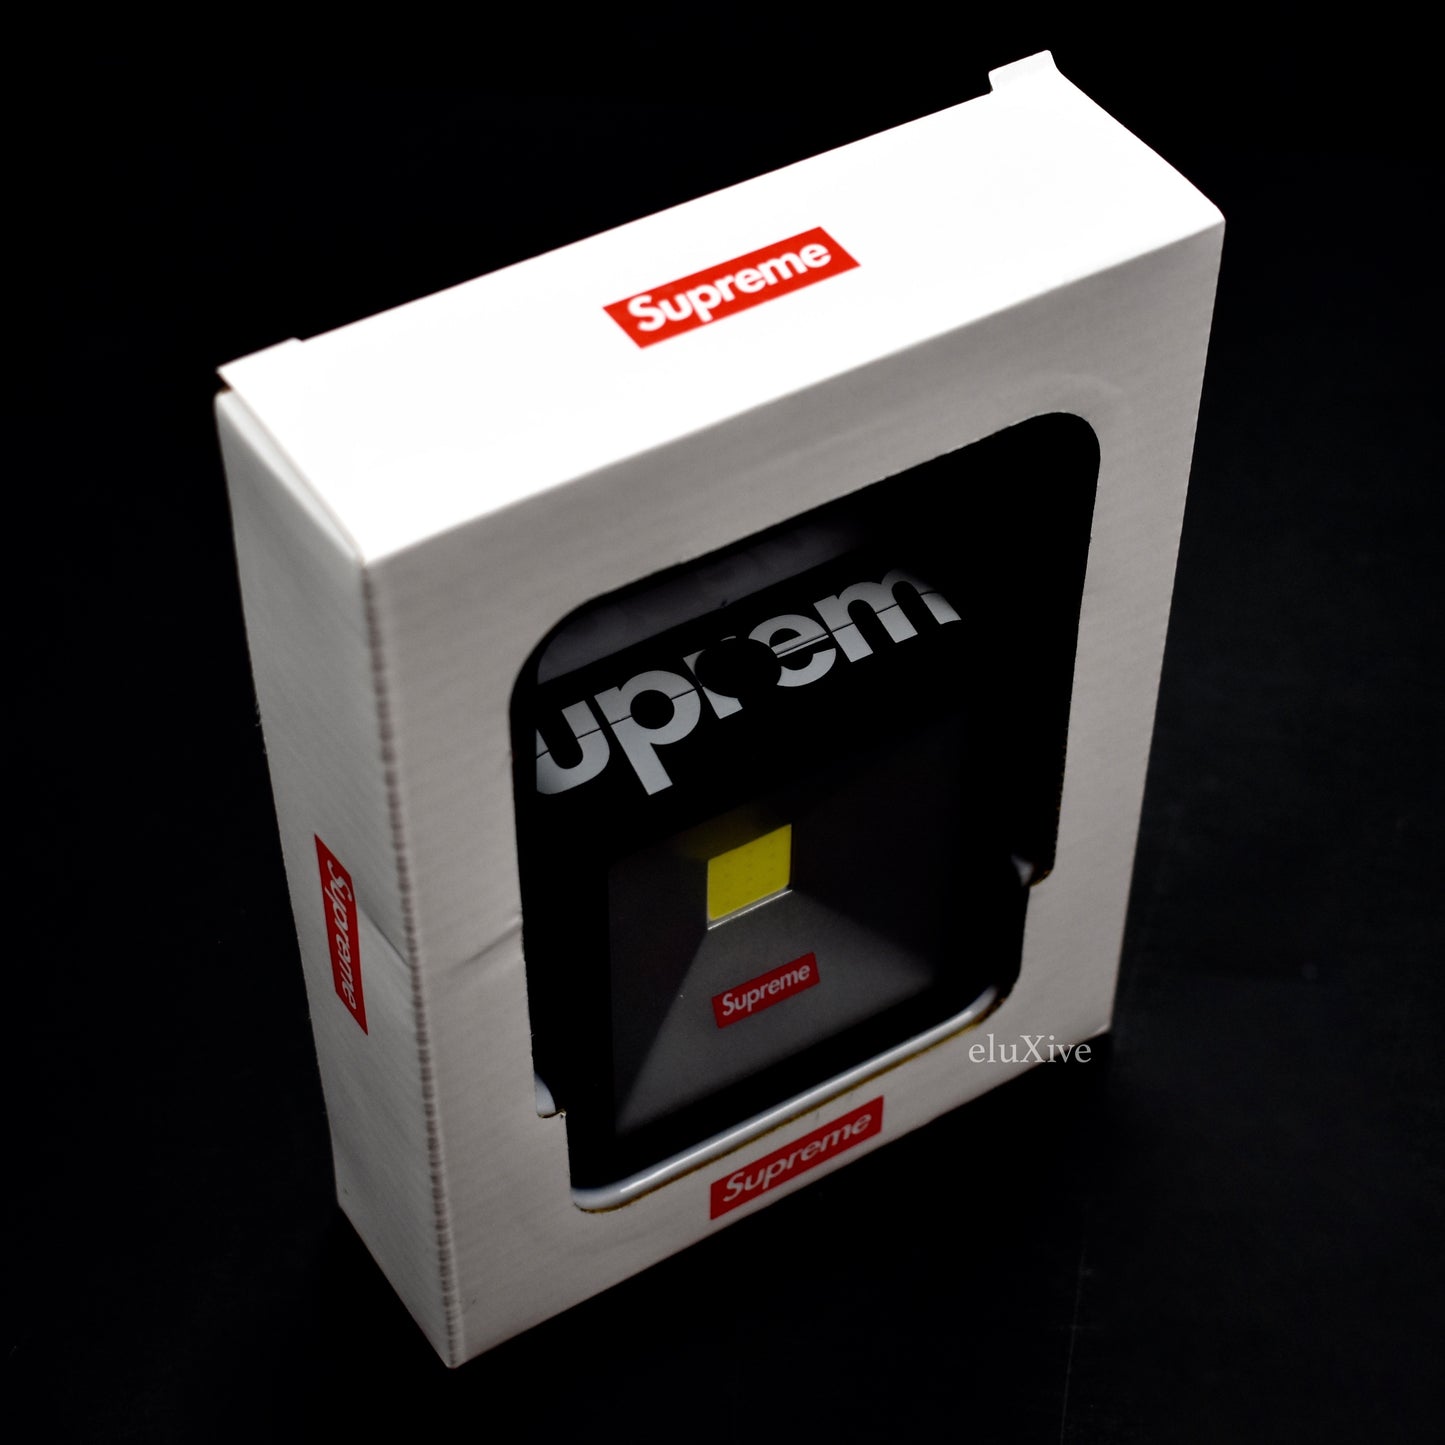 Supreme - Black Box Logo Kickstand Light